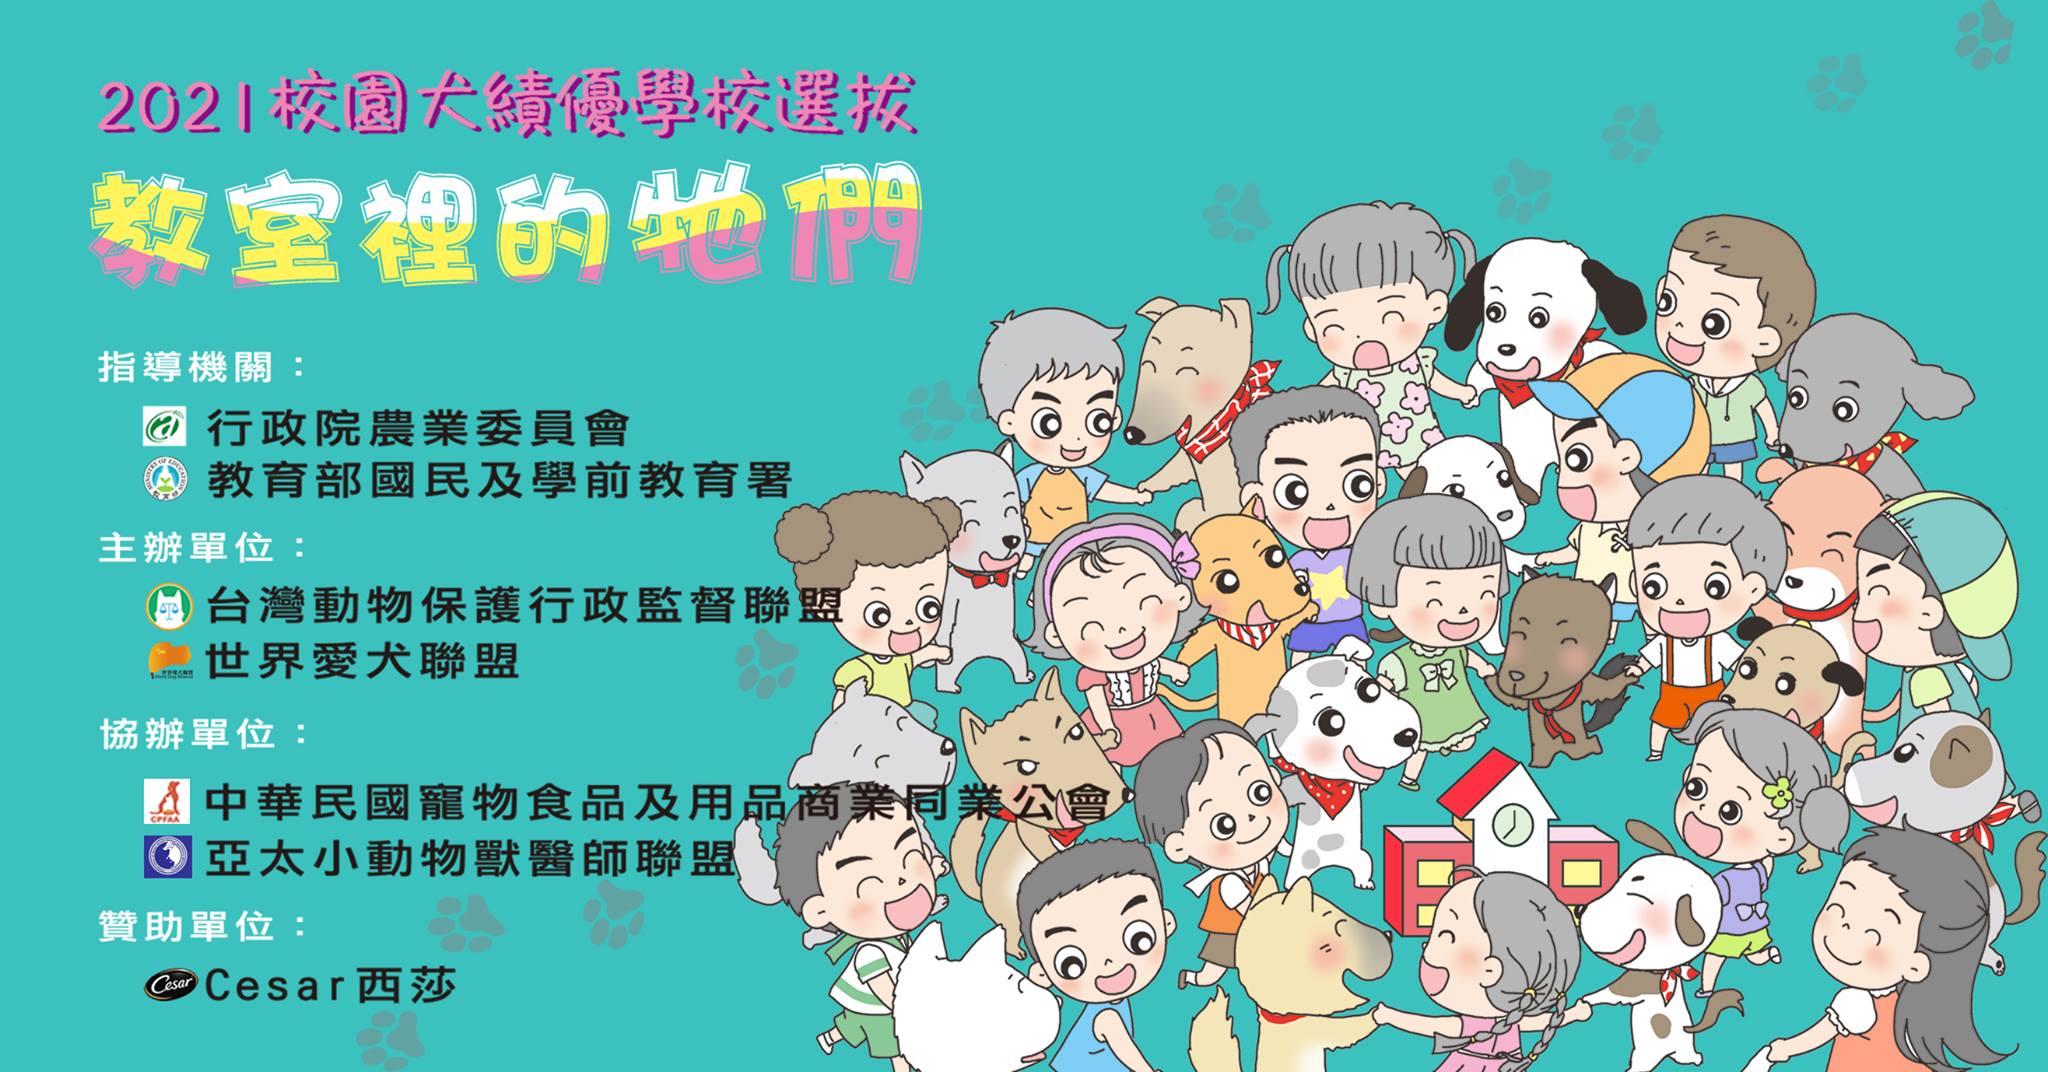 Toàn bộ 3600 trường học từ cấp 1 đến cấp 3 trên toàn Đài Loan, chỉ cần nhà trường đồng ý nhận nuôi chó, Ủy ban nông nghiệp Đài Loan sẽ hỗ trợ mọi chi phí cần thiết. (Nguồn ảnh: Facebook Liên minh giám sát bảo vệ động vật Đài Loan)